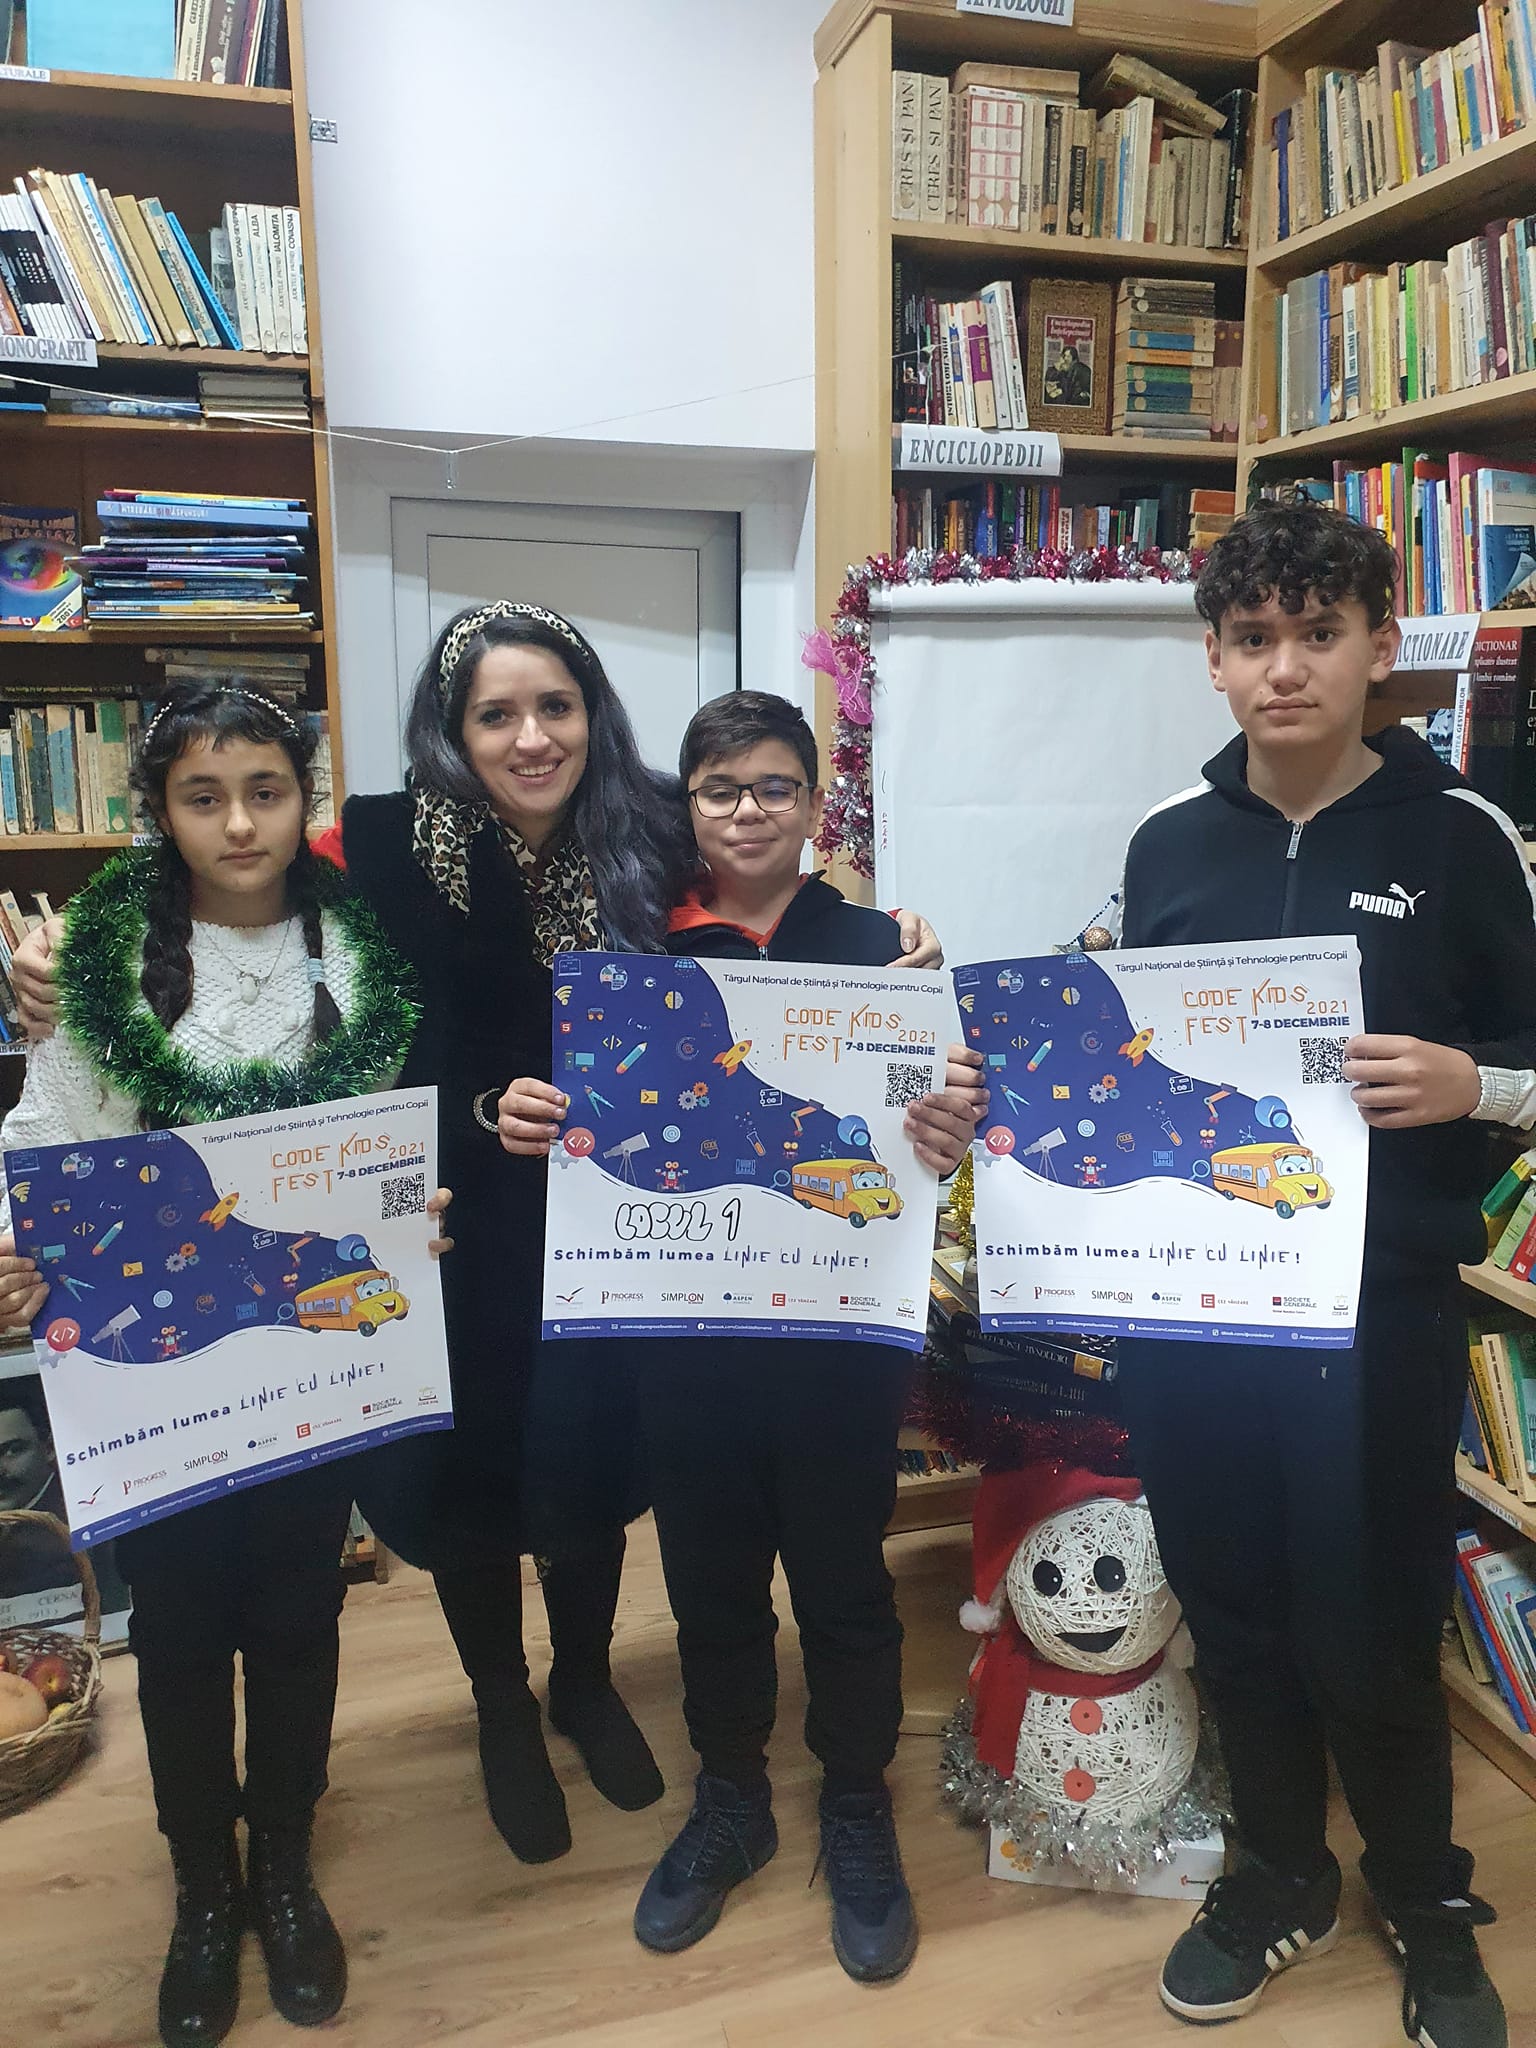 You are currently viewing Trei copii din Cerna au câștigat locul I la CODE Kids FEST 2021 – Târgul Național de Știință și Tehnologie pentru Copii, cu o seră inteligentă!